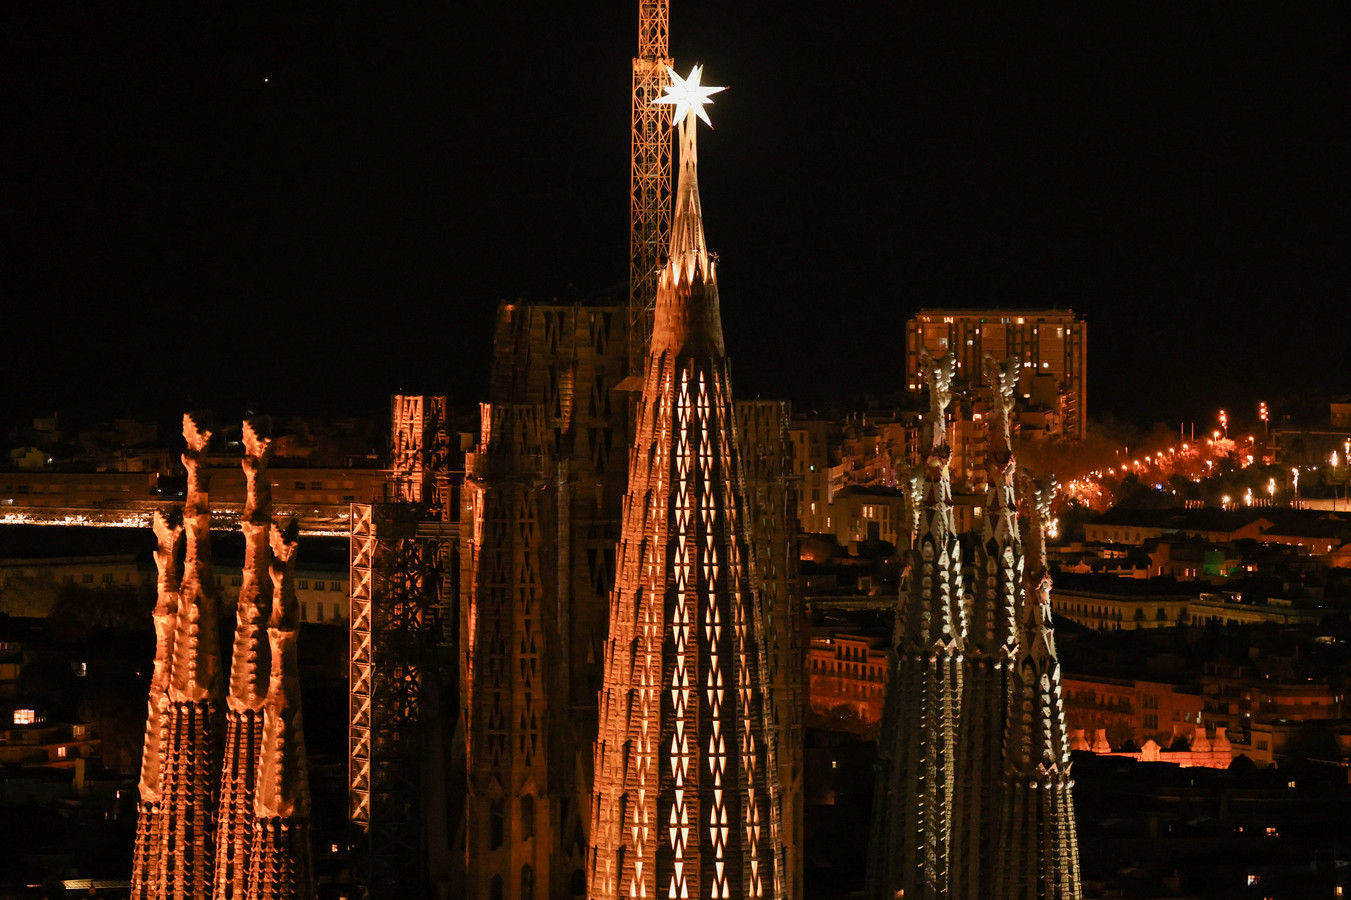 La neuvième tour de la Sagrada Familia a été inaugurée avec l'illumination d'une gigantesque étoile de verre et d'acier de 5,5 tonnes.